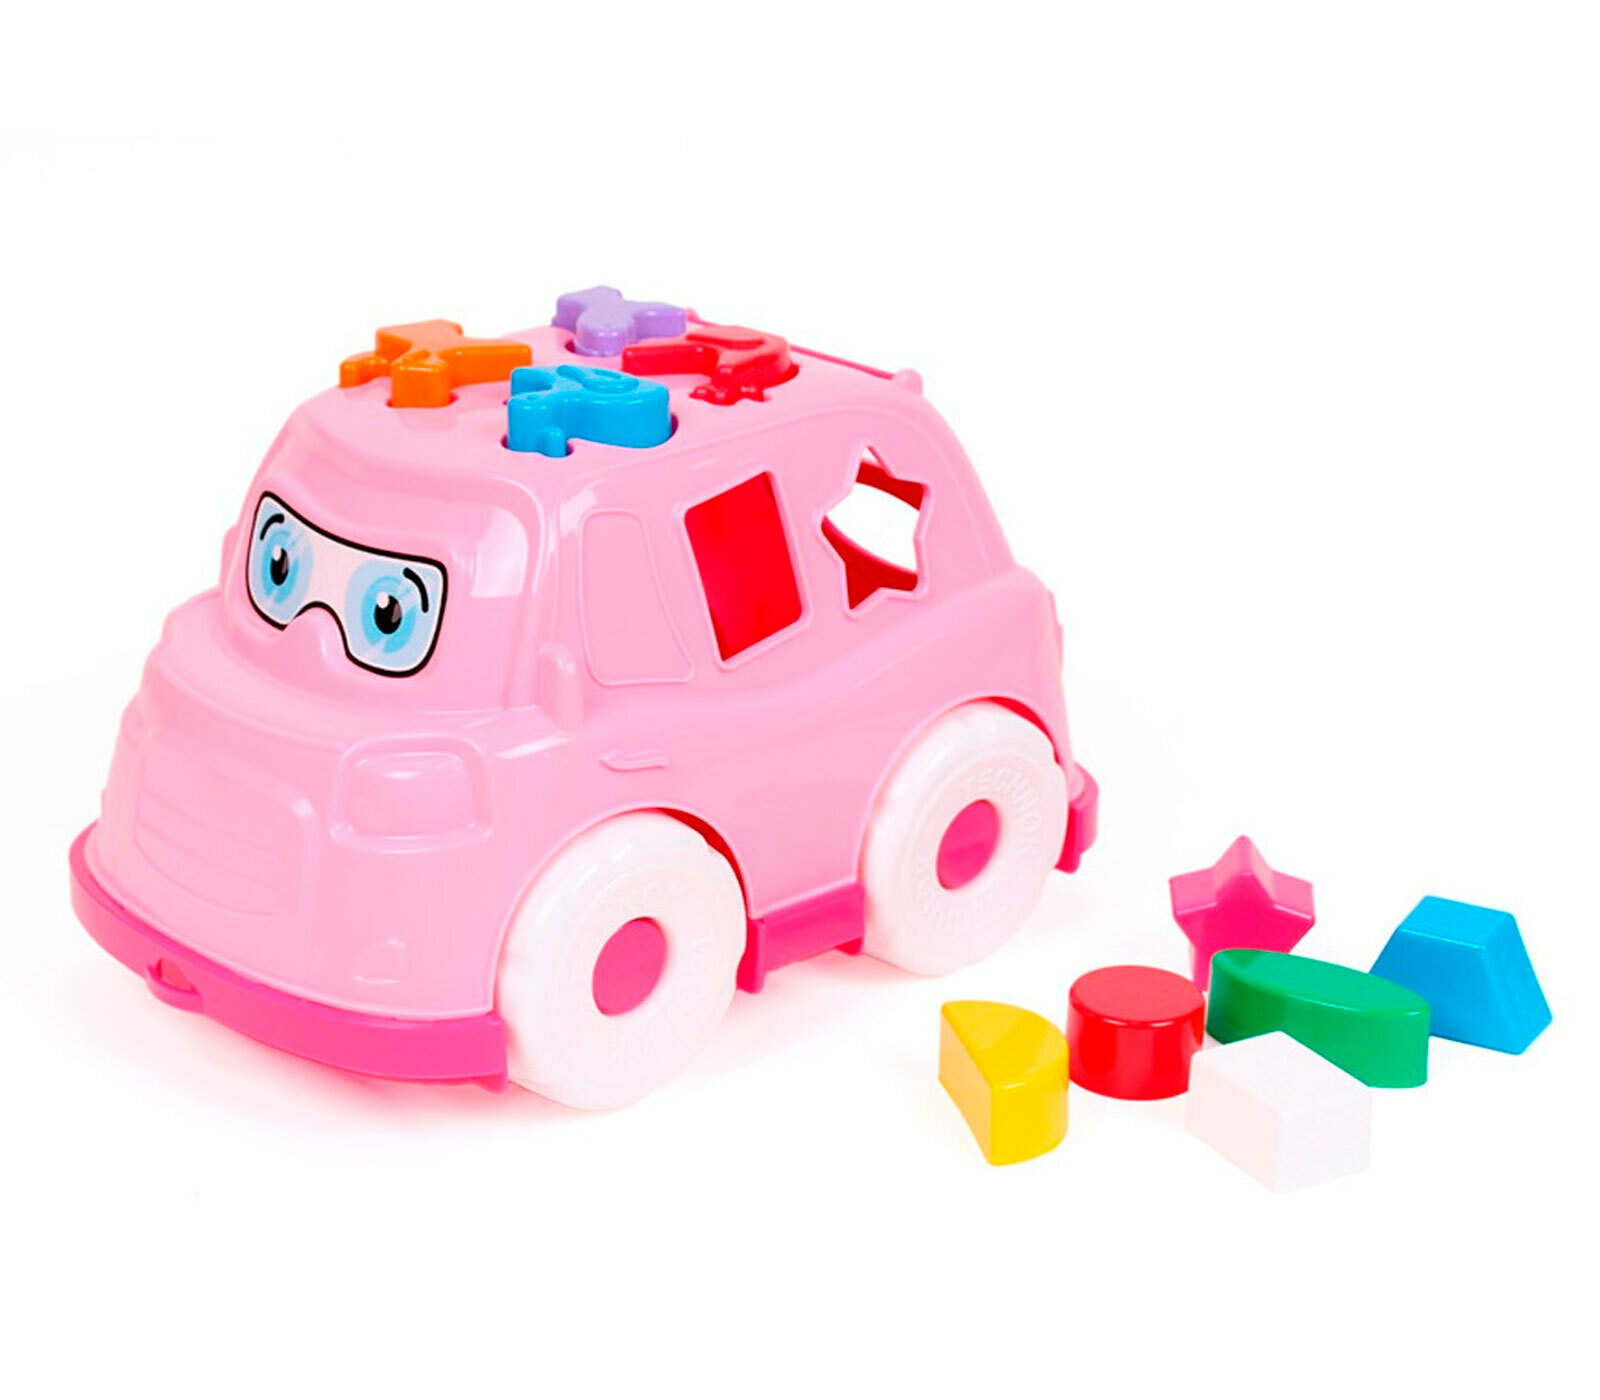 Машинка каталка с фигурками технок / для песочницы / игрушка сортер для детей